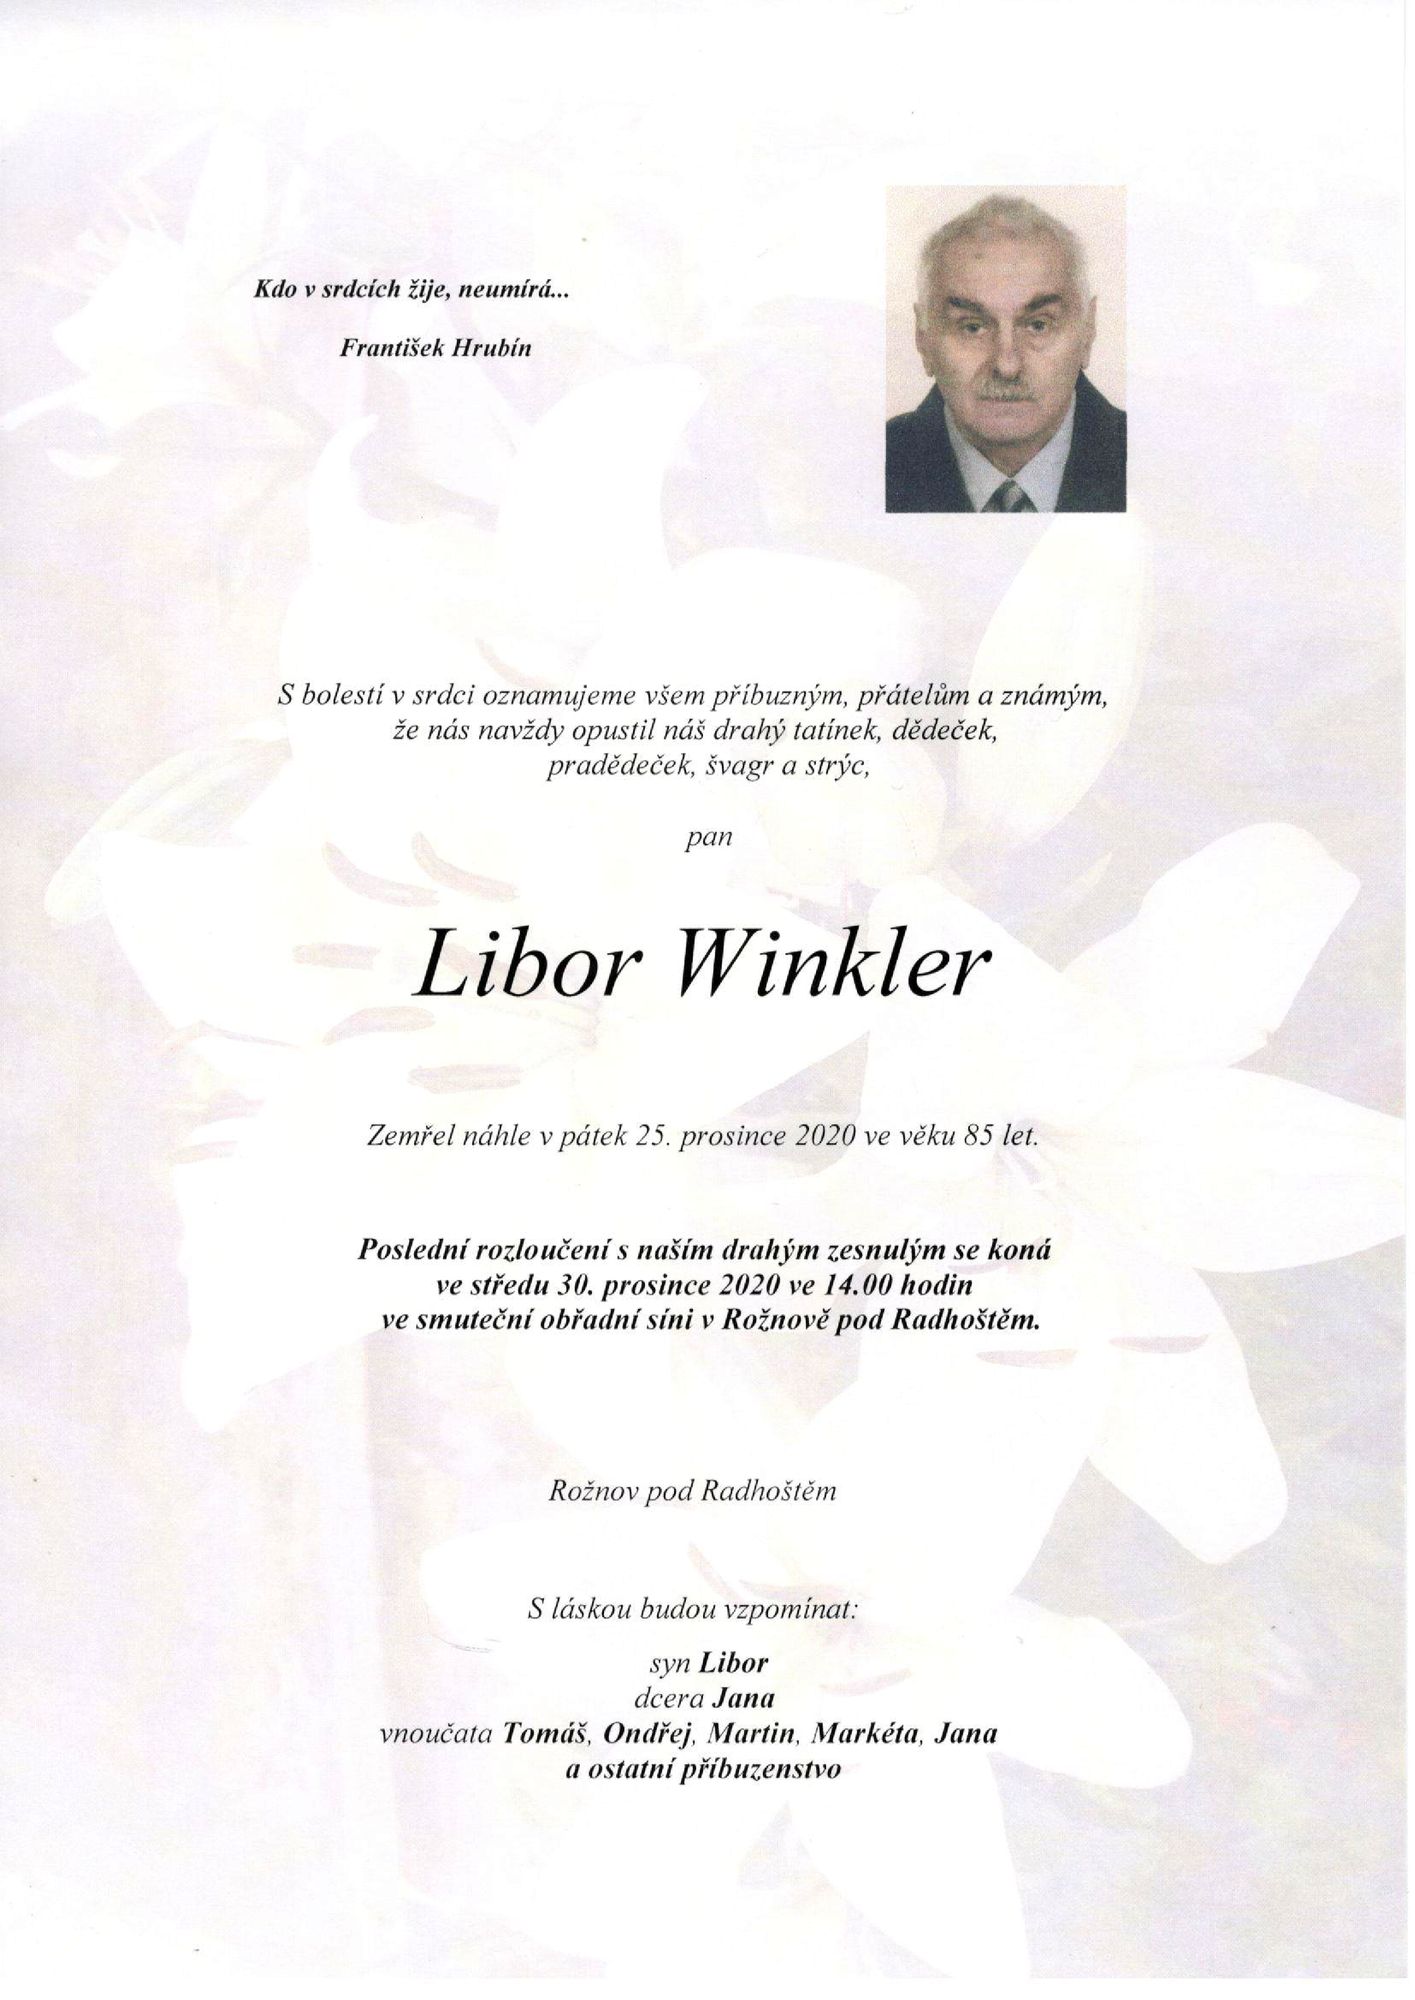 Libor Winkler